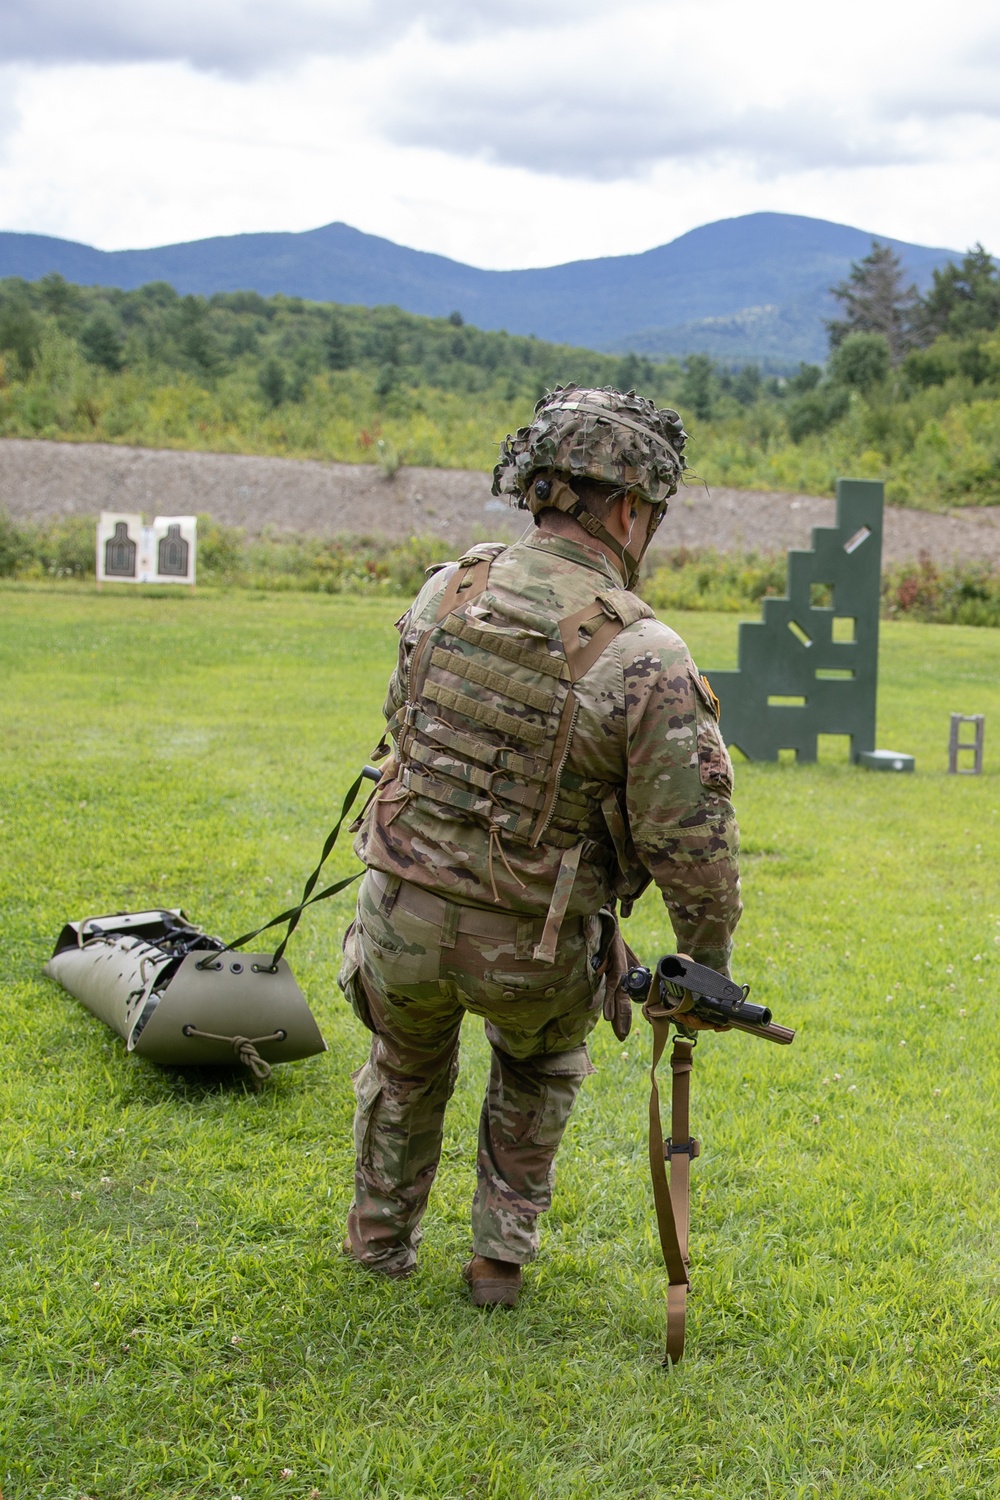 Vermont Infantry Trains Soldier Marksmanship Skills